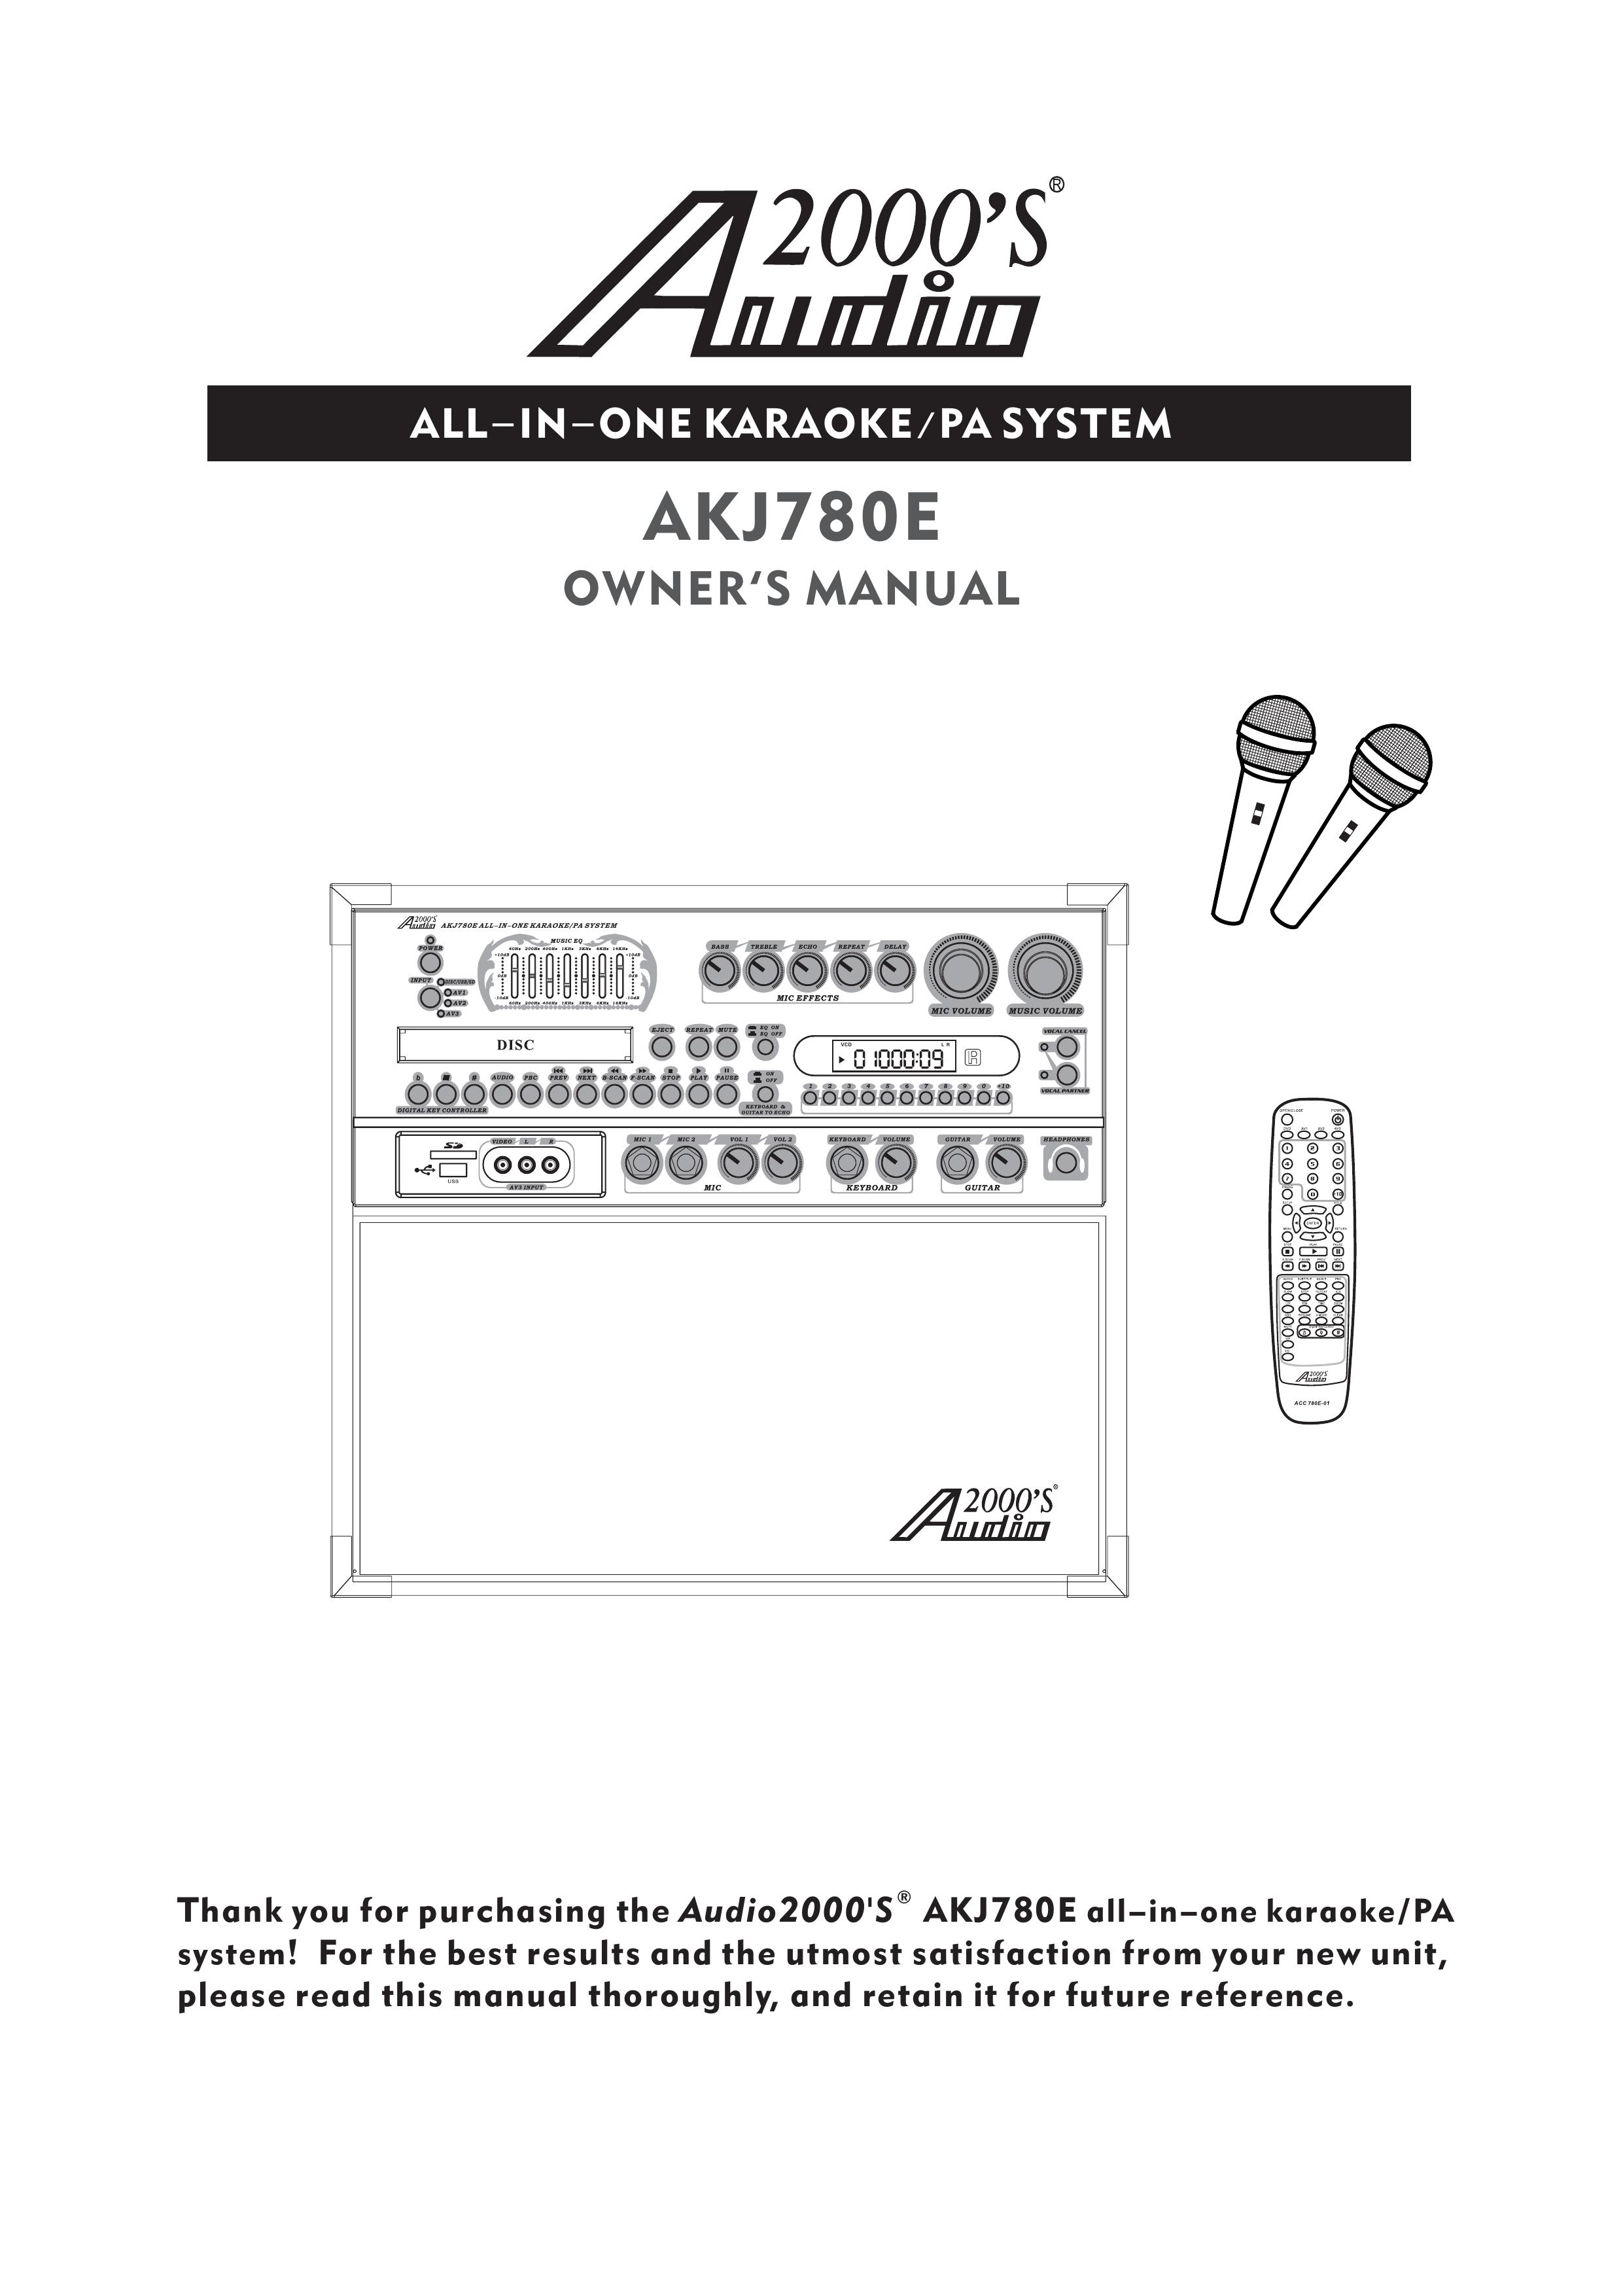 Audio2000's AKJ780E Karaoke Machine User Manual (Page 1)